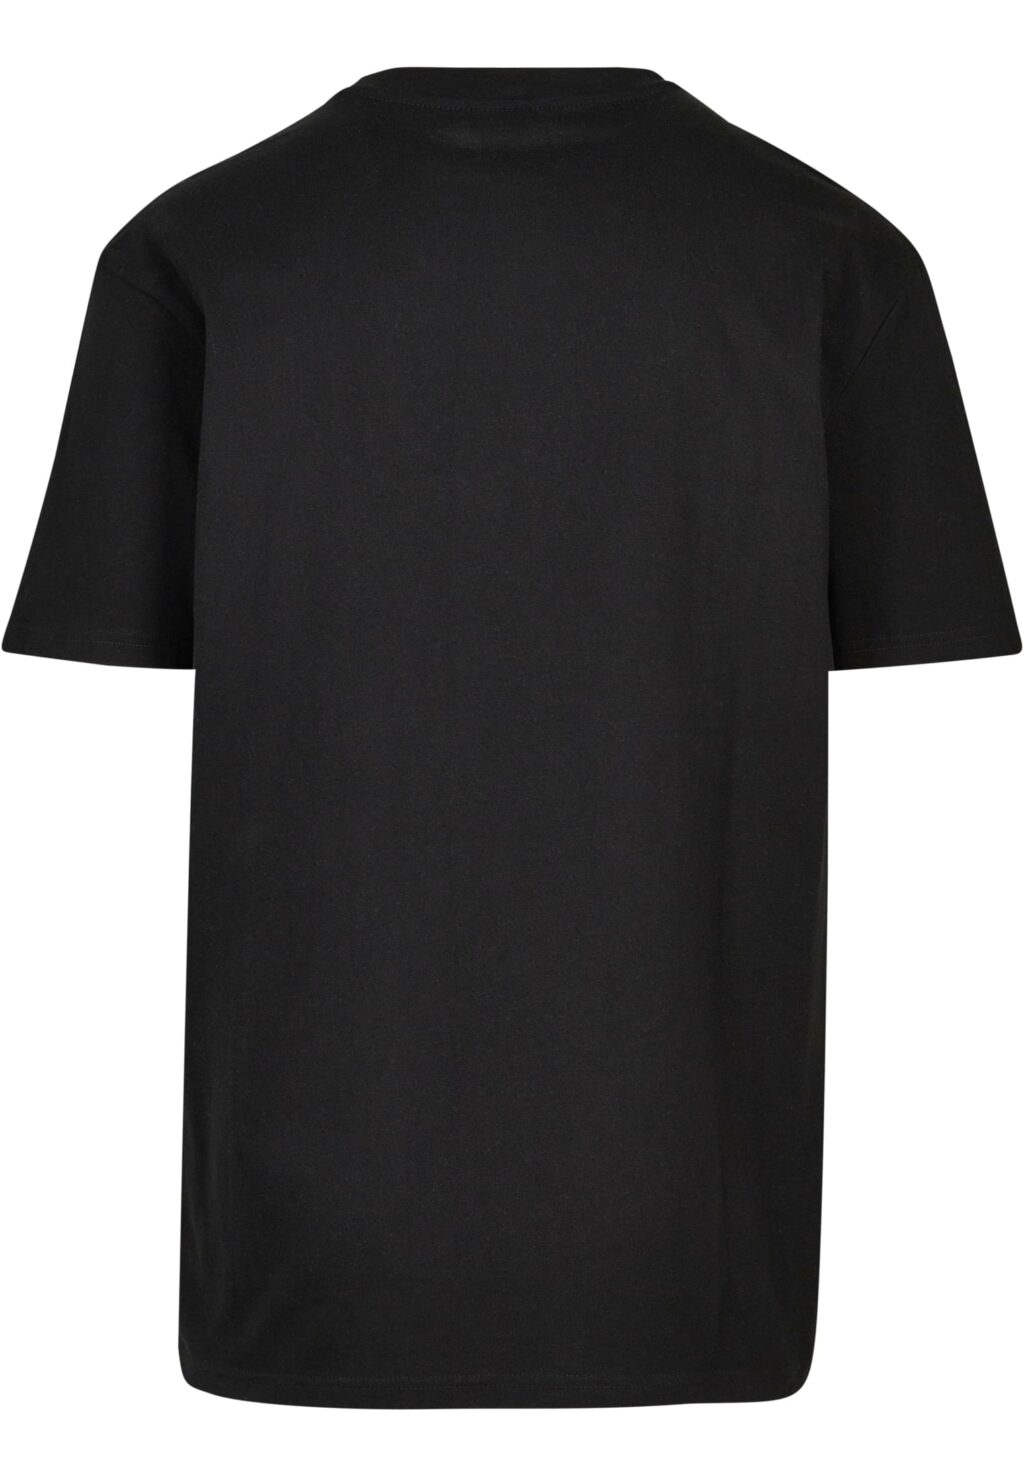 Rocawear T-Shirt black RWTS024